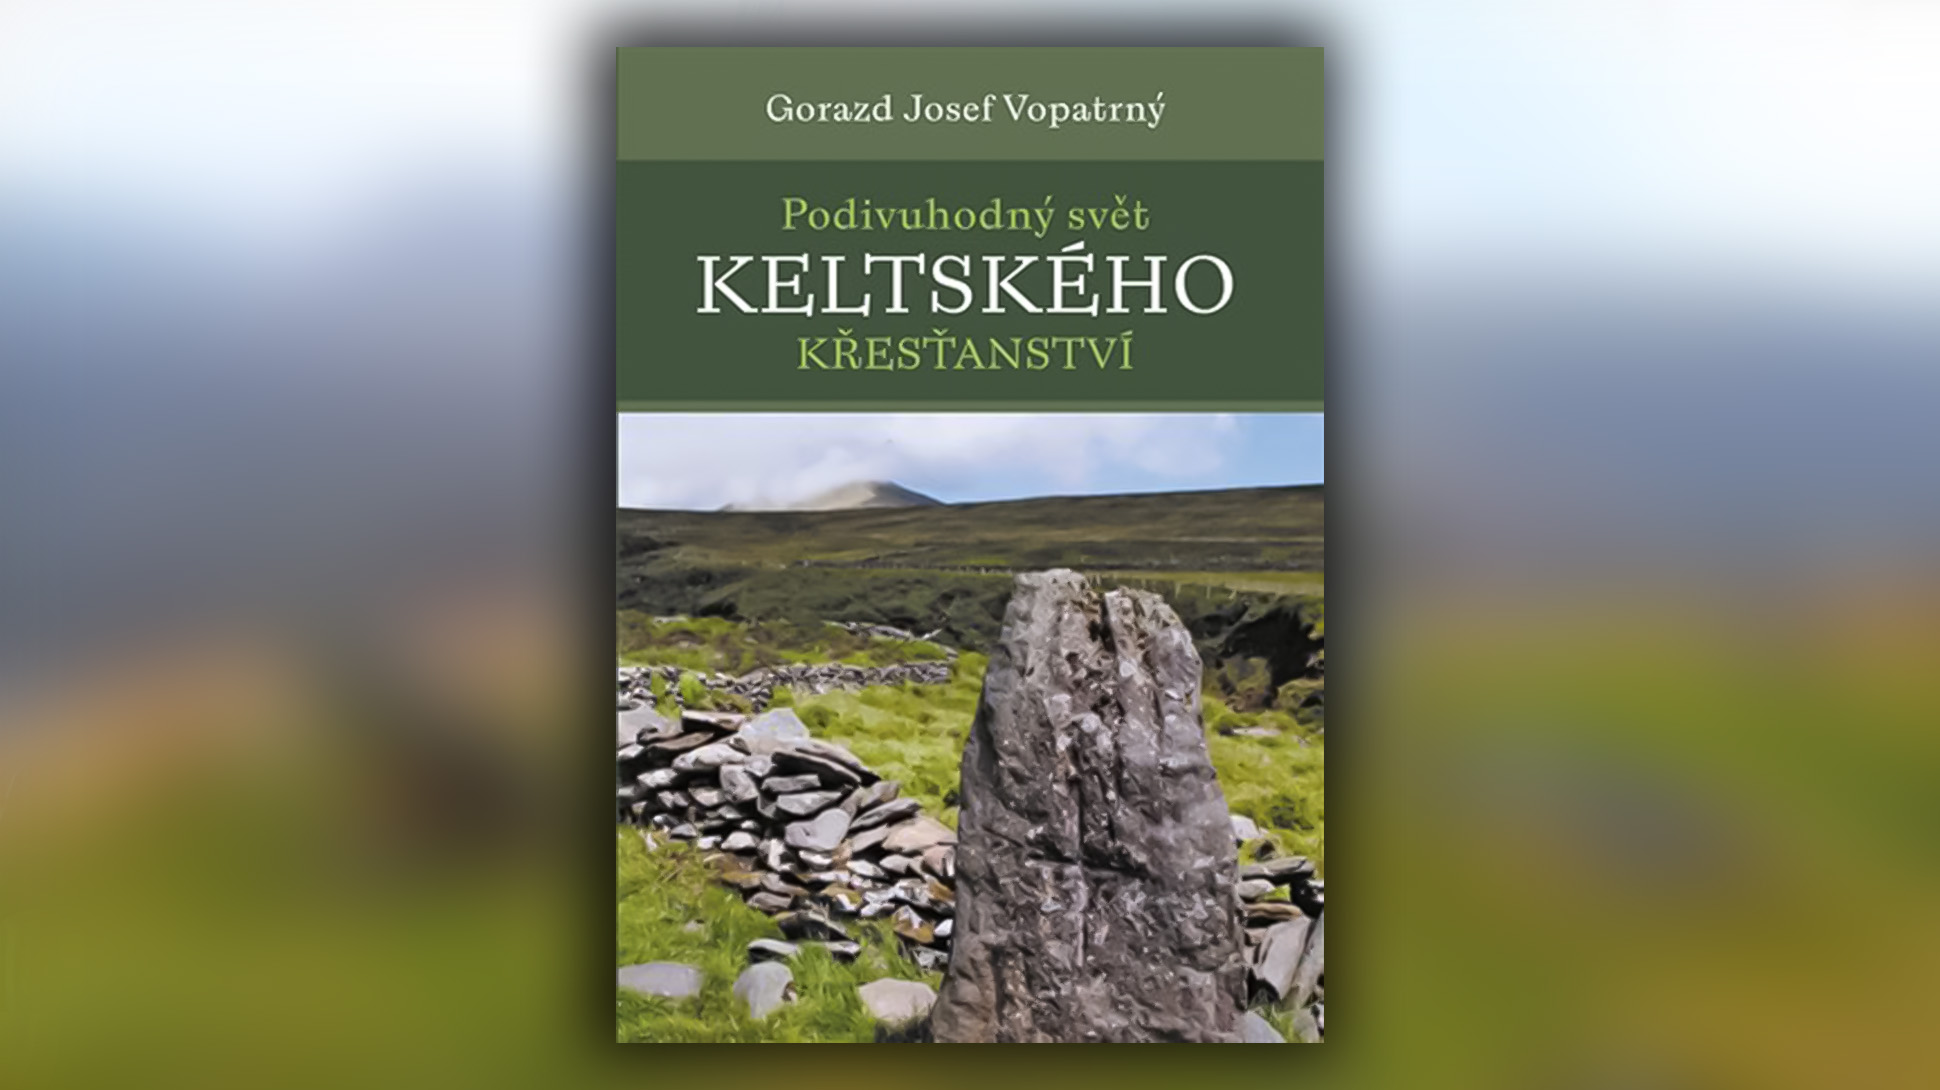 Vychází publikace o keltském křesťanství